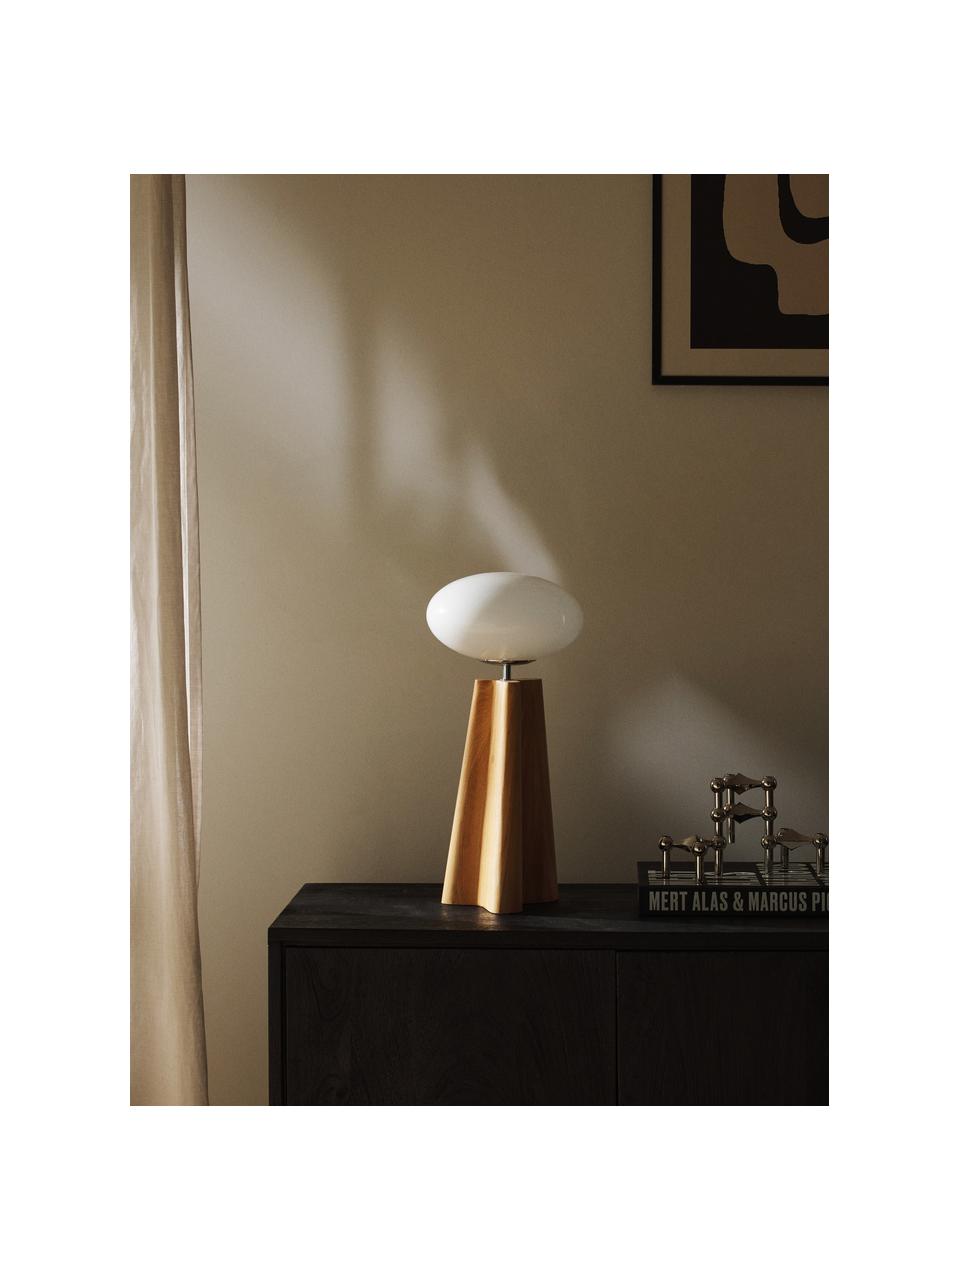 Tischlampe Aino aus Eschenholz, Lampenschirm: Glas, Lampenfuß: Eschenholz, Helles Holz, Weiß, Ø 23 x H 48 cm